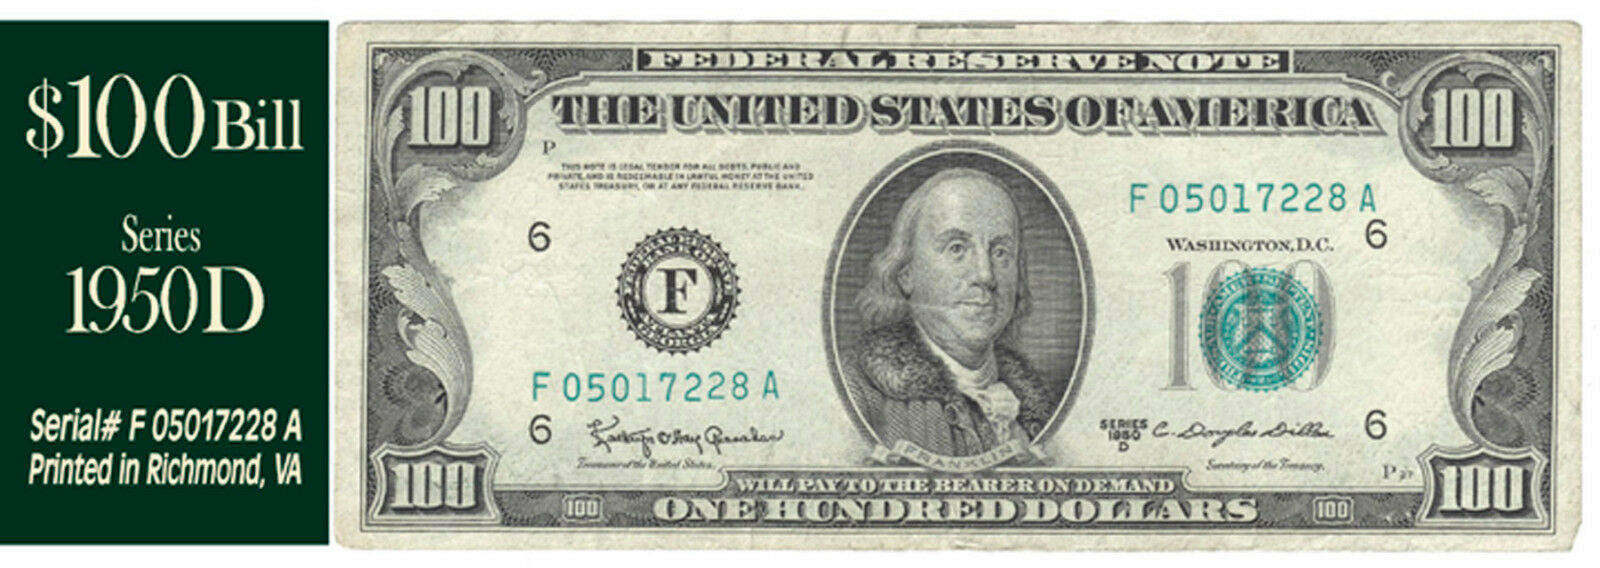 1950 D  Series $100 Bill